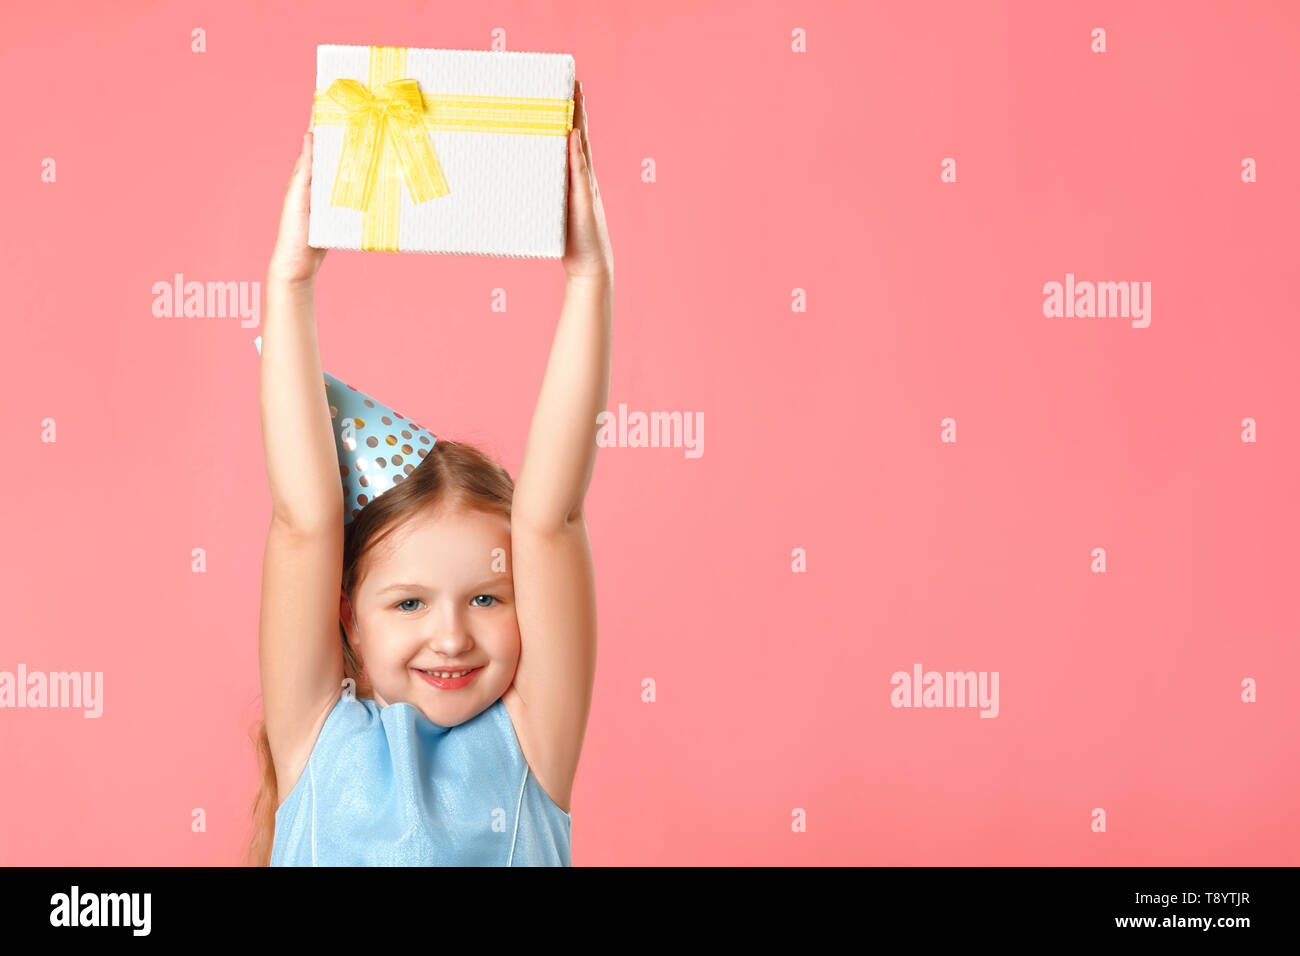 Ein fröhliches kleines Mädchen in einem Gap hält eine Box mit einem Geschenk über ihrem Kopf. Porträt eines Kindes auf einem rosa Koralle Hintergrund. Kopieren Sie Platz. Stockfoto